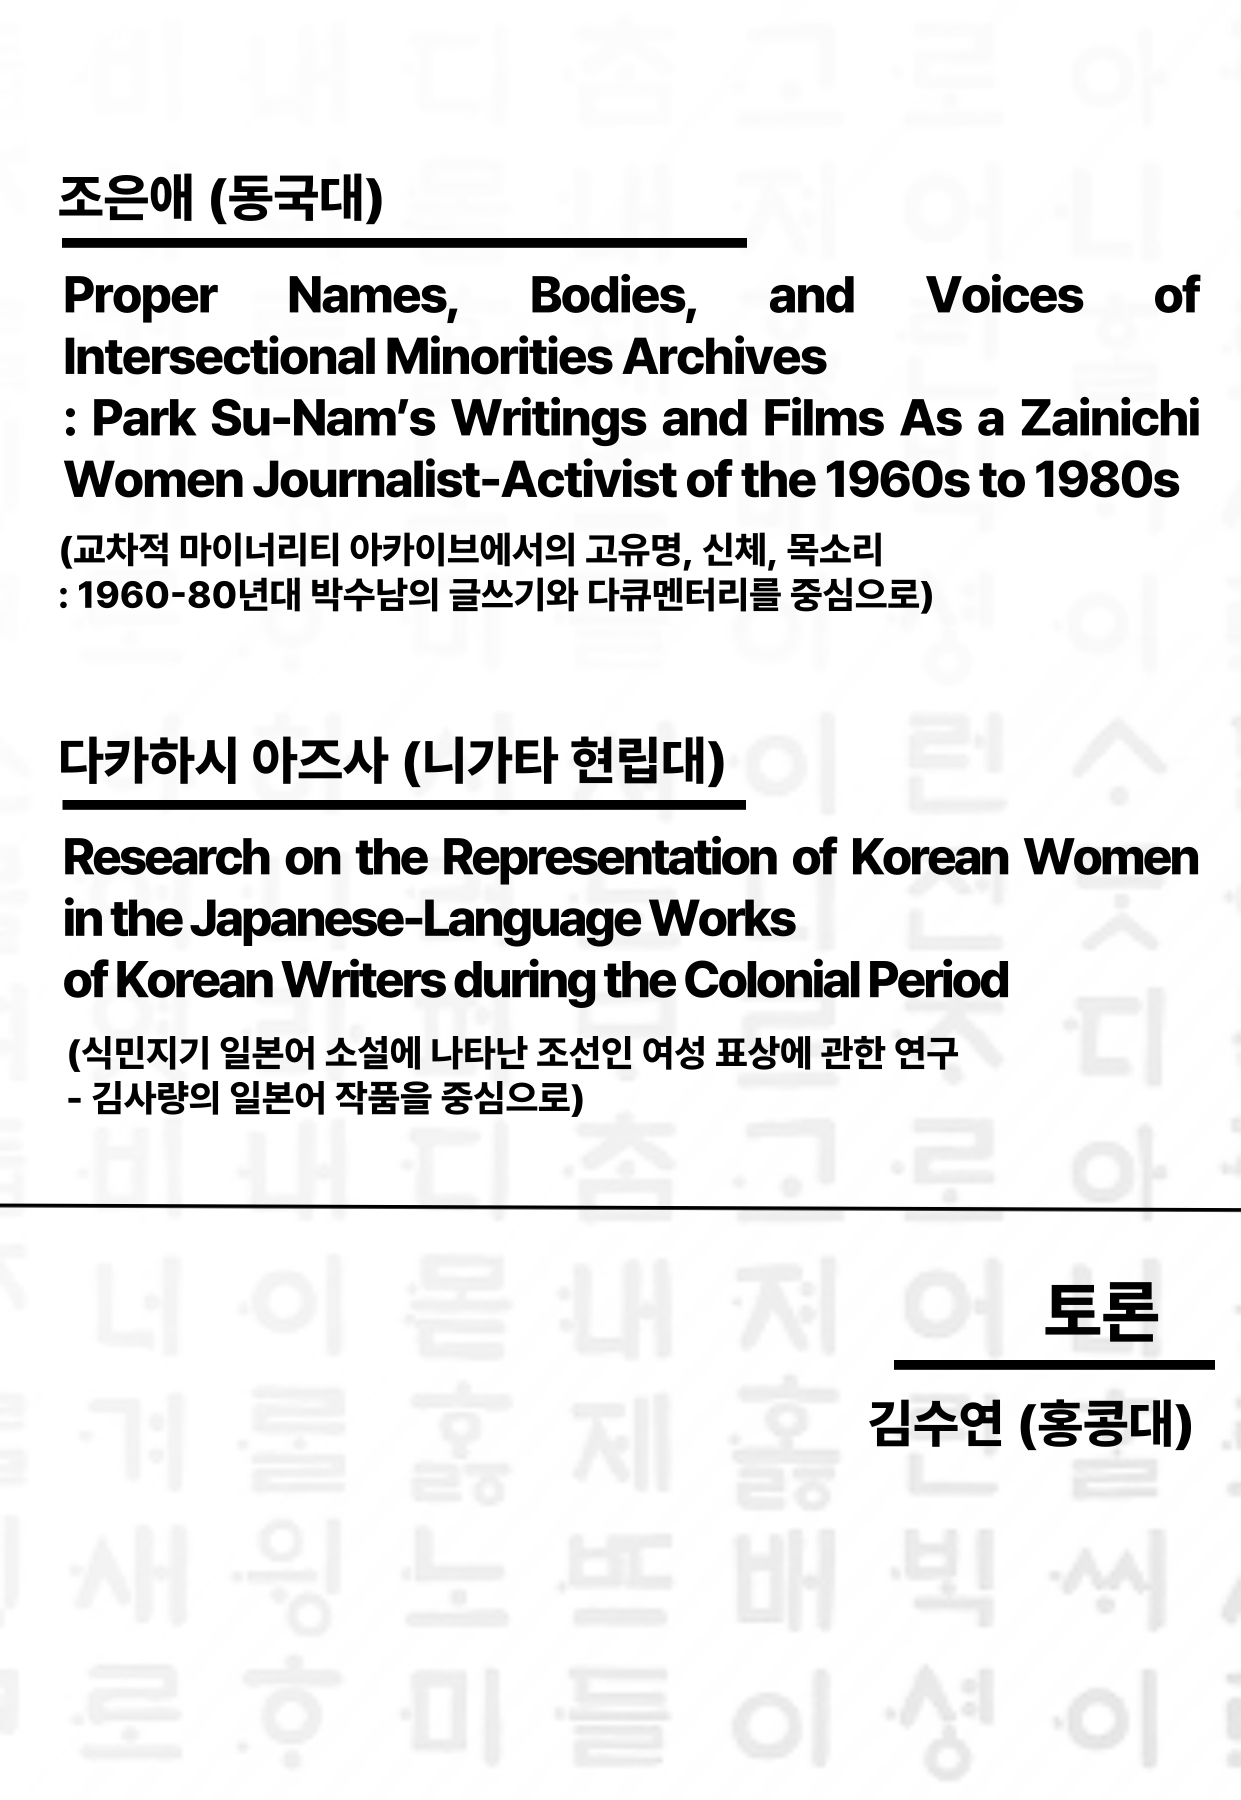 문구: '조은애 (동국대) Voices of Proper Names, Bodies, and Intersectional Minorities Archives Park Su-Nam's Writings and Films As a Zainichi Women Journalist- of the 1960s to 1980s (교차적 마이너리티 아카이브에서의 고유명, 신체, 목소리 :1960-80년대 박수남의 글쓰기와 다큐멘터리를 중심으로) 다카하시 아즈사 (니가타 현립대) Research on the Representation of Korean Women in the Japanese- Works Korean Writers during the Colonial Period (식민지기 일본어 소설에 나타난 조선인 여성 표상에 관한 연구 -김사량의 일본어 작품을 중심으로) 어토론 토론 메이 아하이진는 노 몰 富 제 김수연 (홍콩대) 배 빅 ì'의 이미지일 수 있음